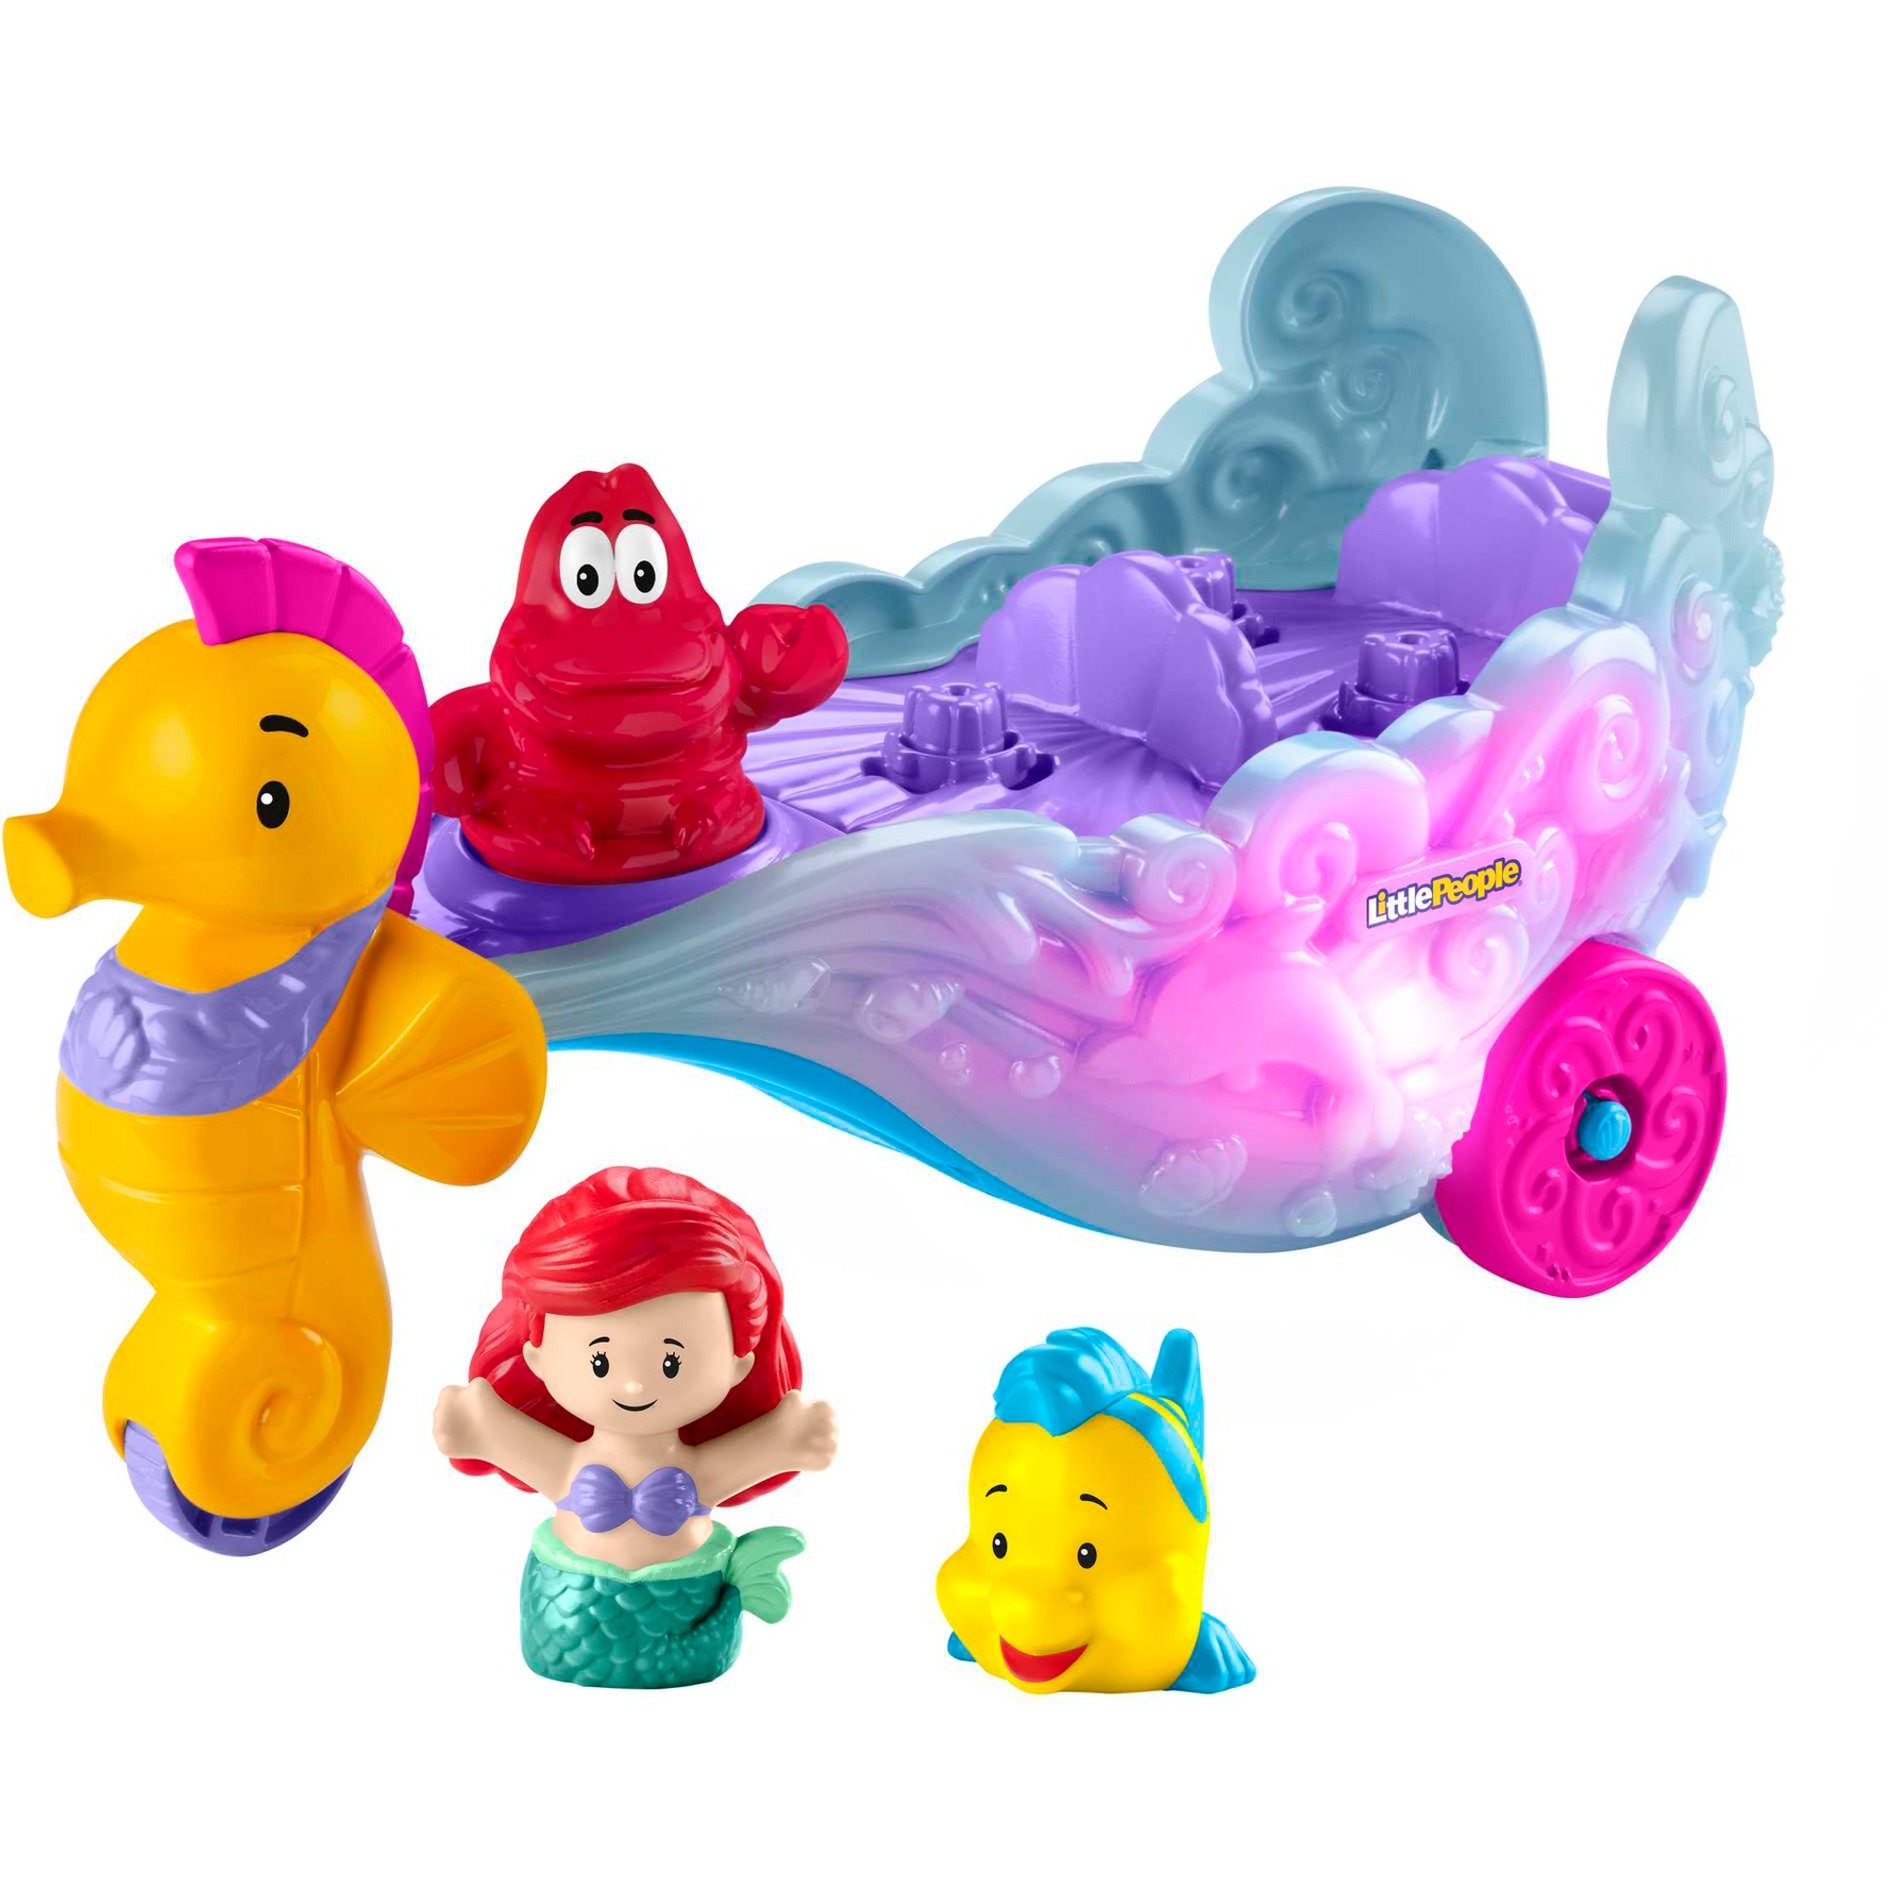 Fisher-Price Little People Kleinkinder-Spielset mit Disney Prinzessin Arielle- und Fabius-Figuren sowie Kutsche mit Musik und Lichtern - HMX83